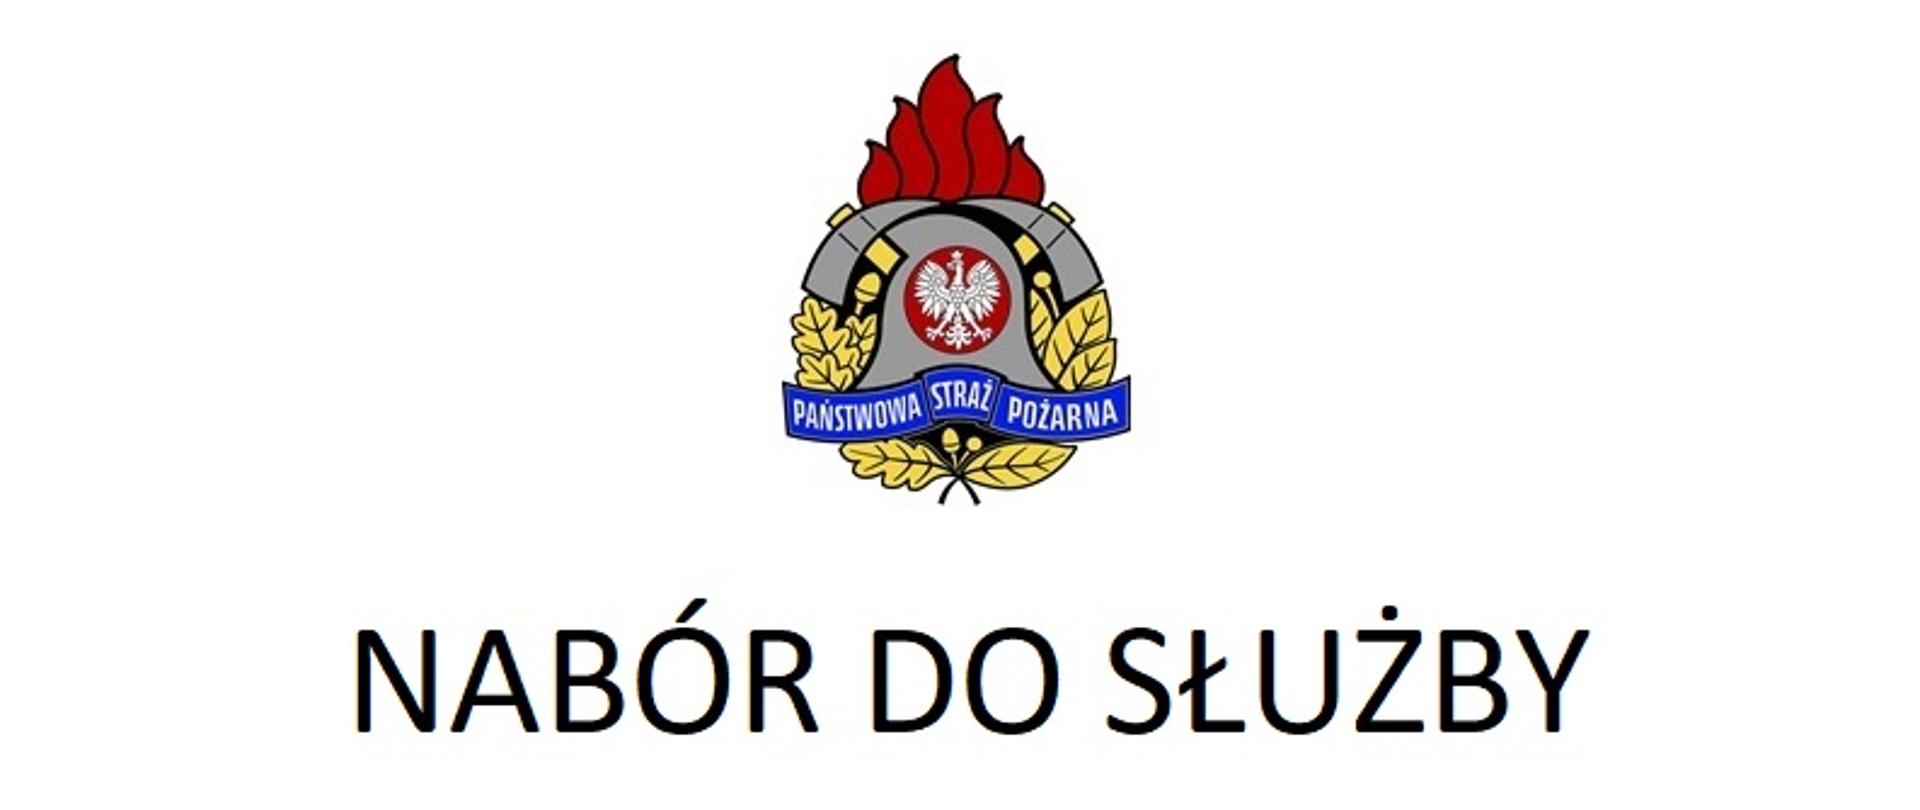 Na zdjęciu logo Państwowej Straży Pożarnej, a pod nim napis "Nabór do służby"